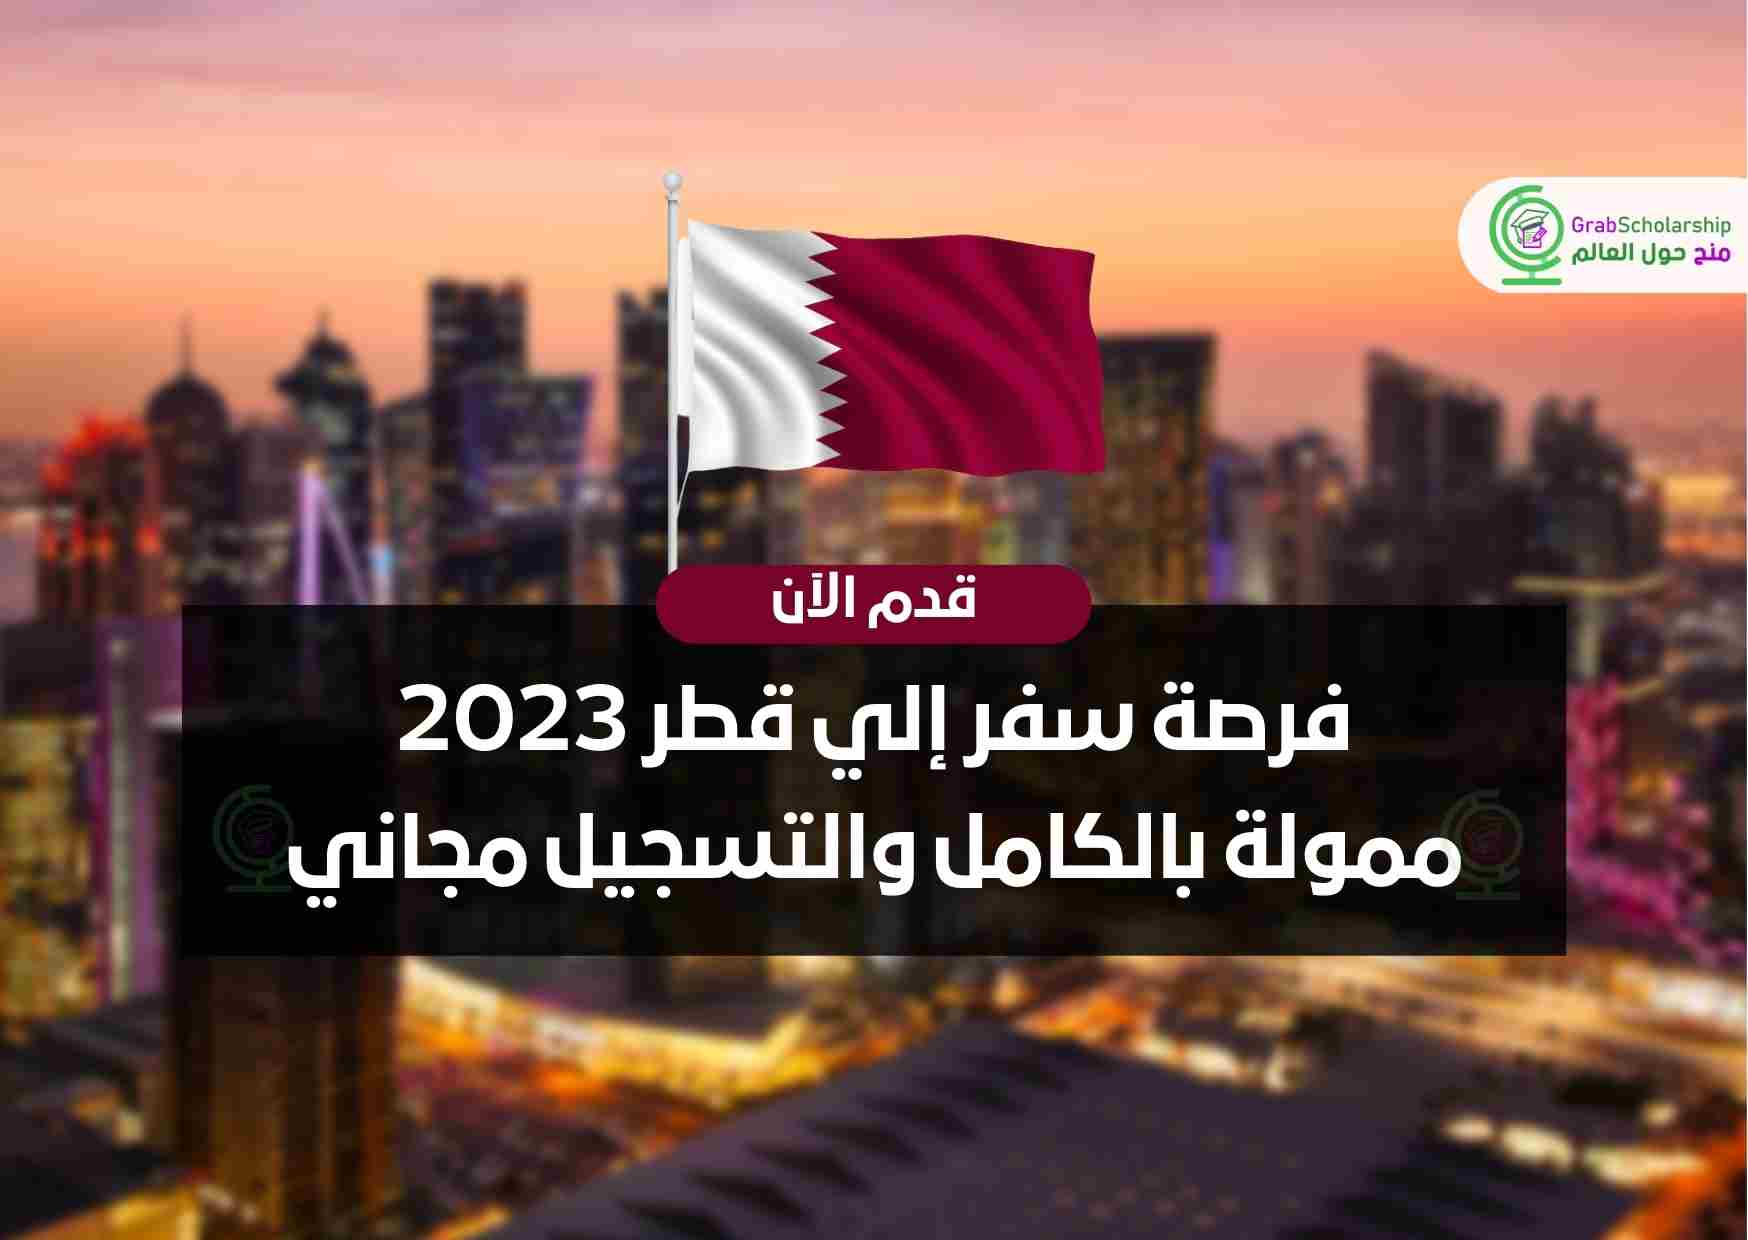 فرصة سفر إلي قطر 2023 ممولة بالكامل والتسجيل مجاني